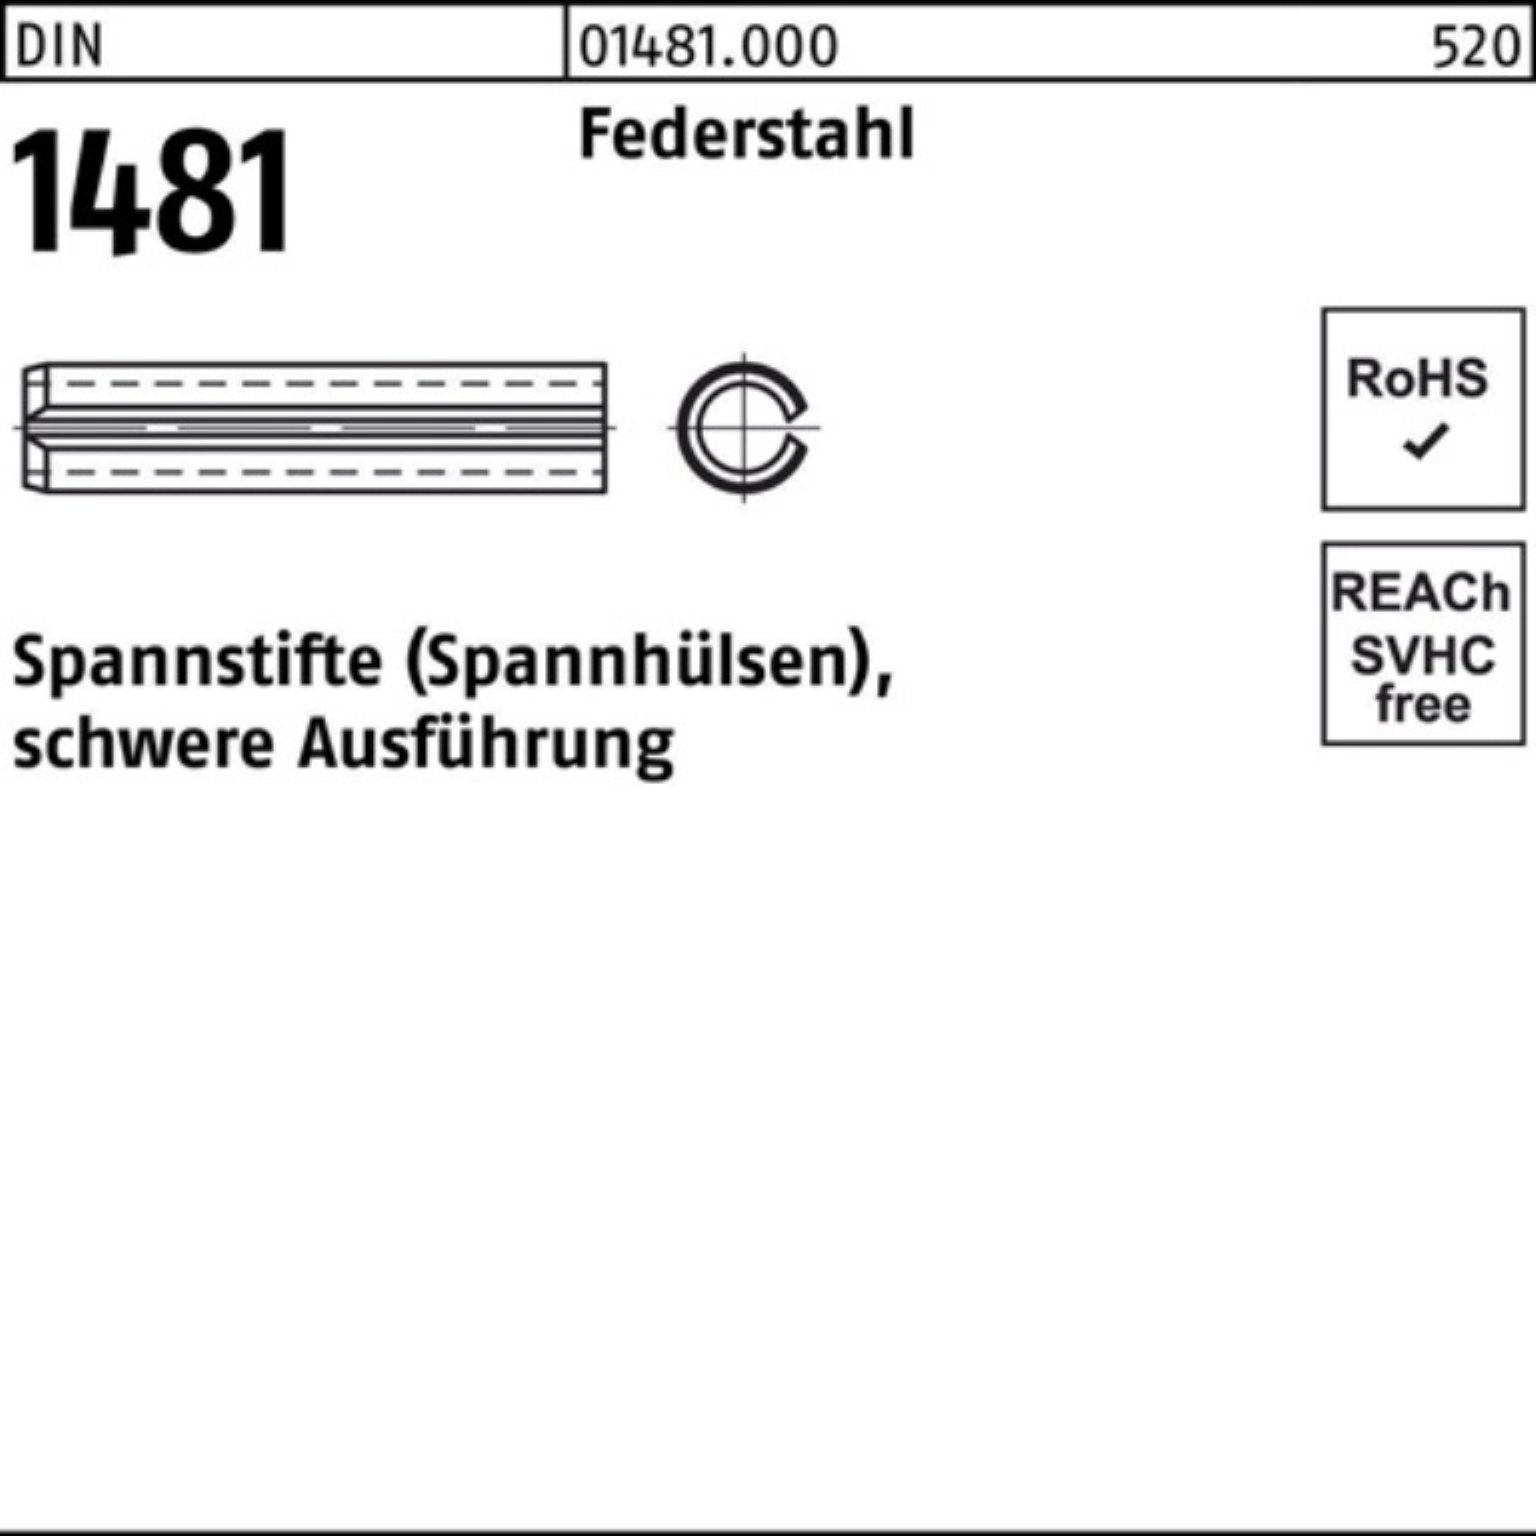 Reyher Spannstift 200er Pack Spannstift DIN 1481 1x 10 Federstahl schwere Ausführung 20